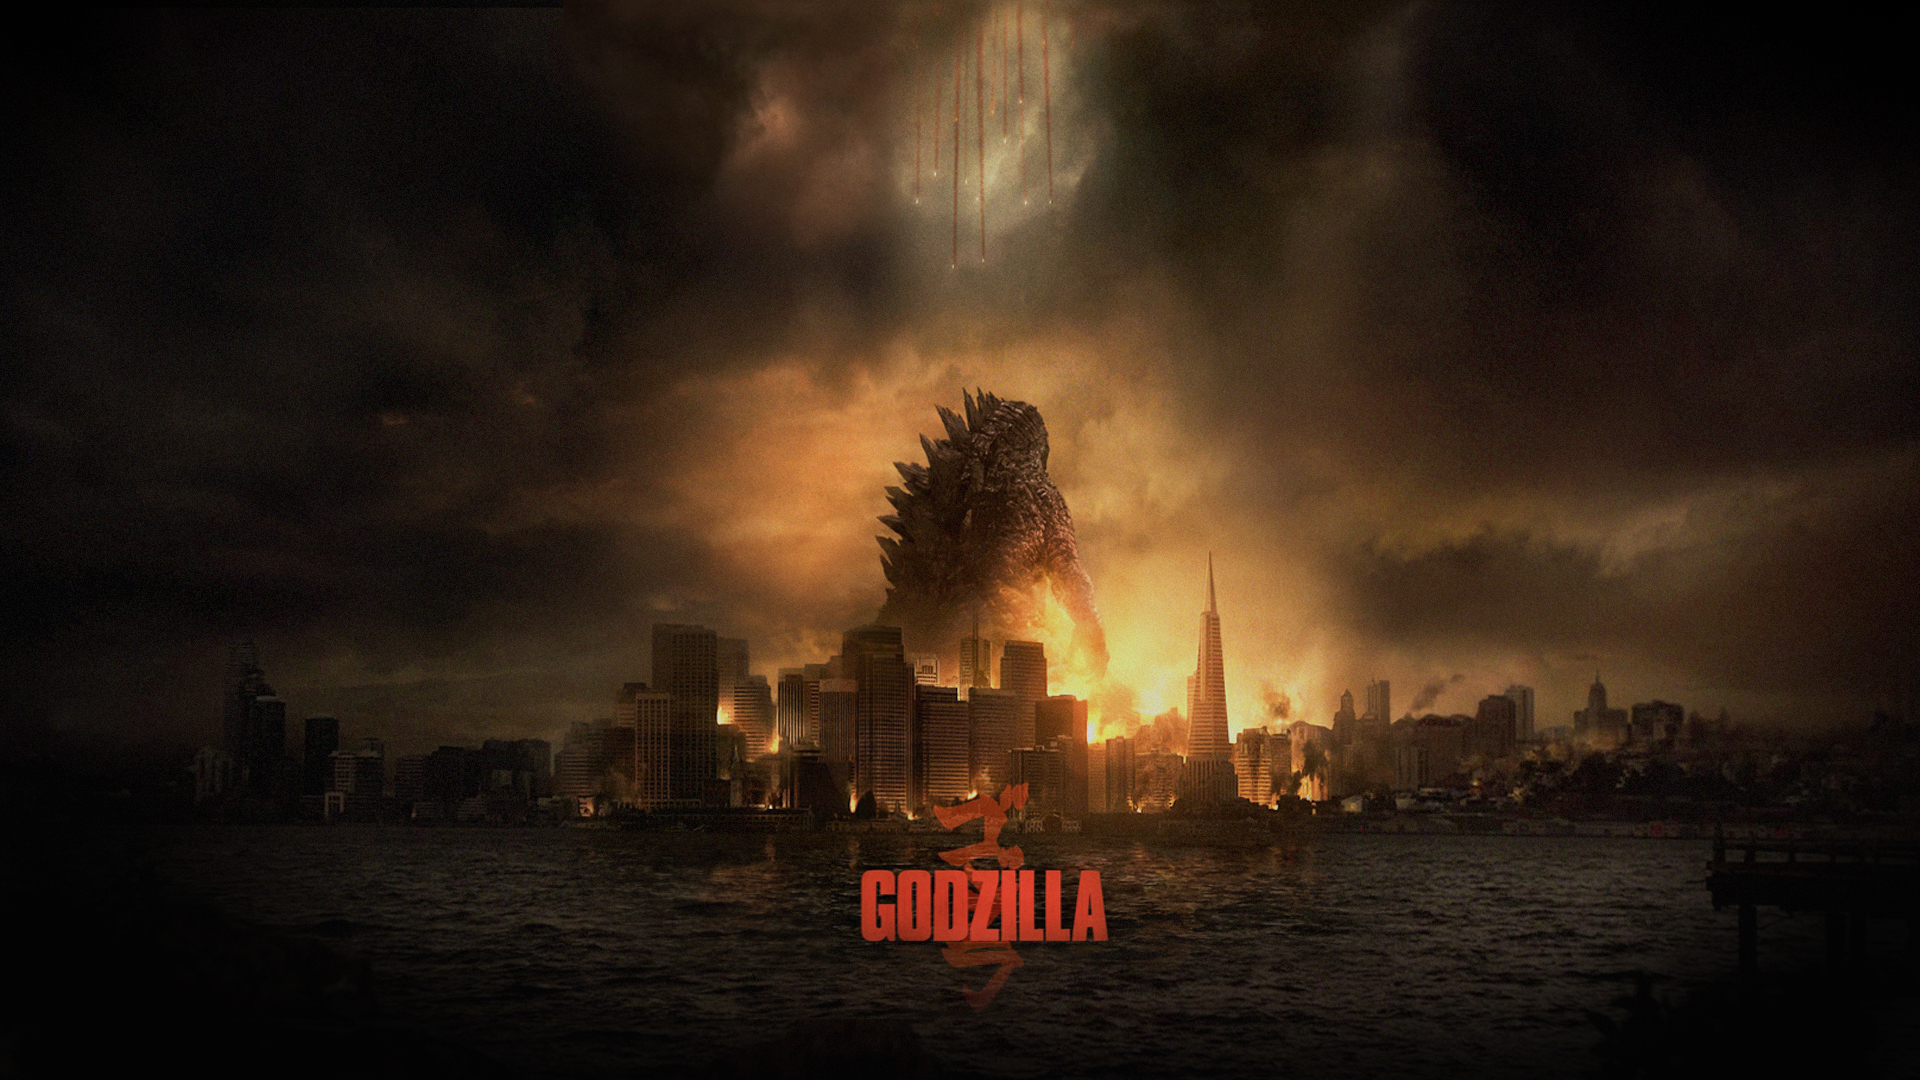 General 1920x1080 movies digital art movie poster creature Godzilla